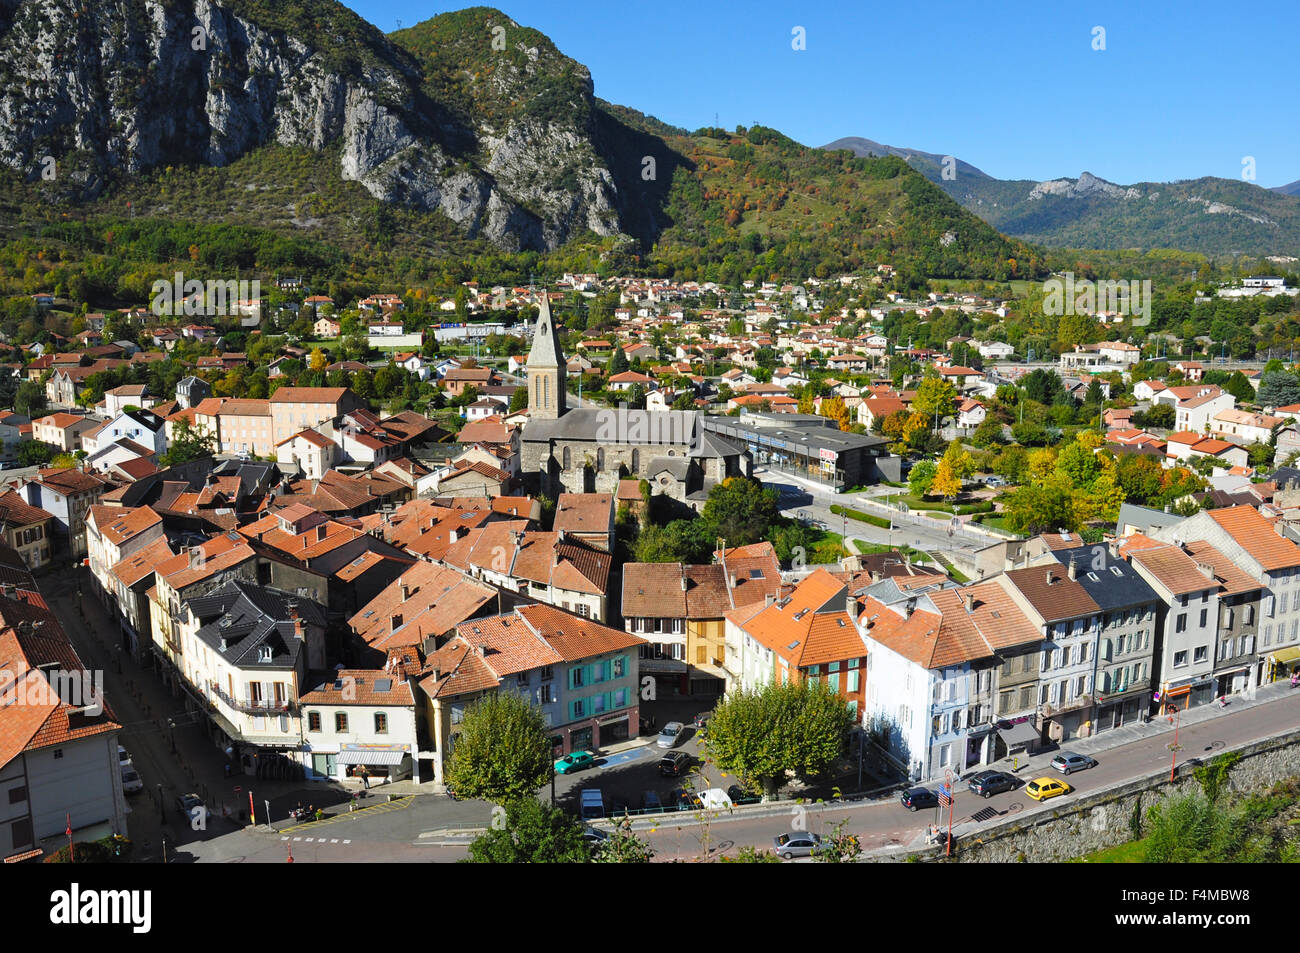 Town overview, Tarascon, Ariege, Midi-Pyrenees, France Stock Photo